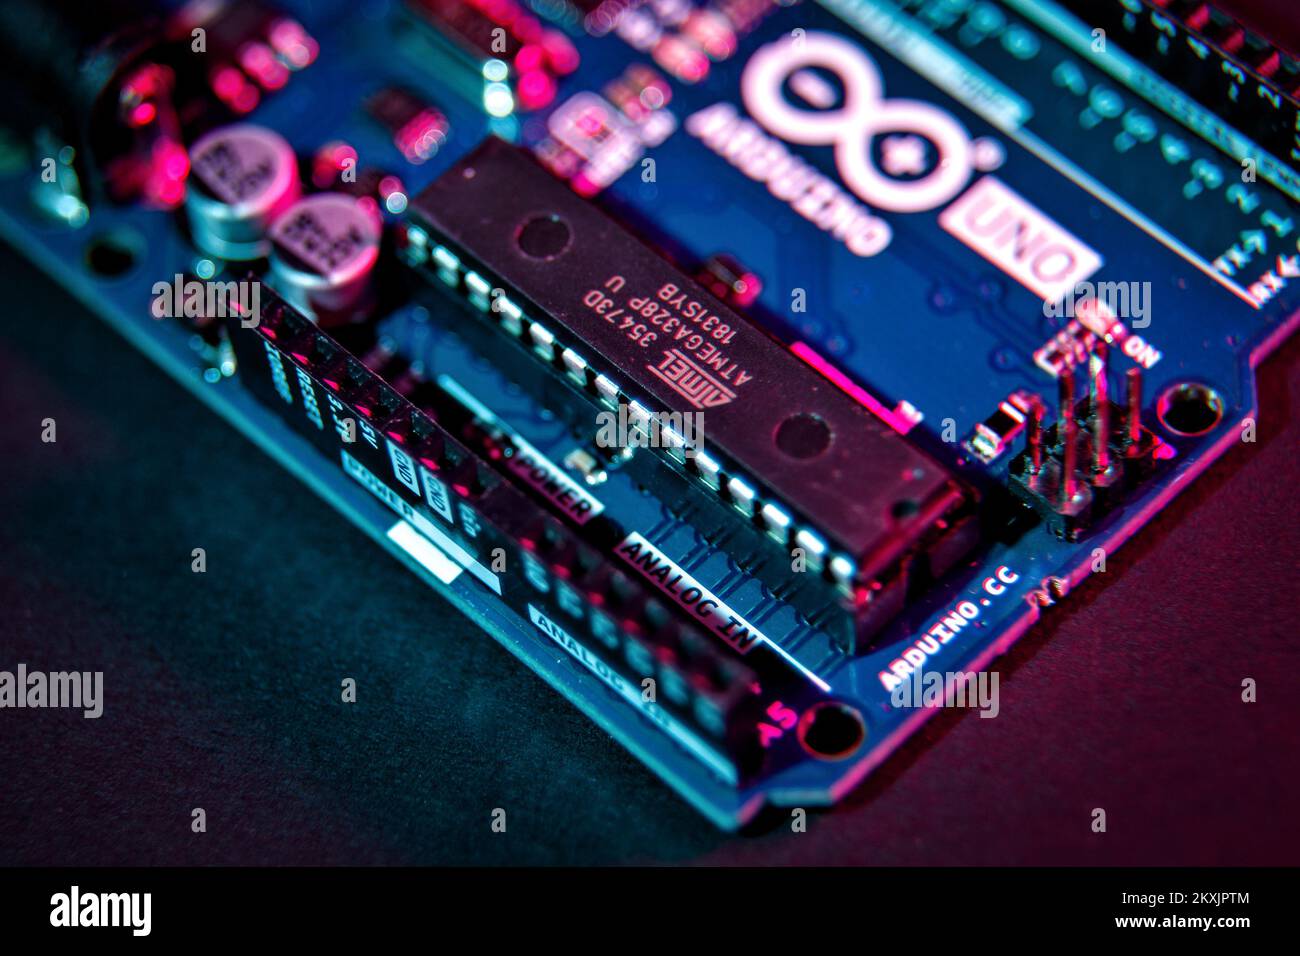 Das Foto wurde am 23. November 2020 aufgenommen und zeigt Arduino Uno, ein Open-Source-Mikrocontroller-Board, das auf dem Mikrocontroller Microchip ATmega328P basiert und von Arduino.cc in Zagreb, Kroatien, entwickelt wurde. Es verfügt über 14 digitale Eingangs-/Ausgangsstifte (von denen 6 als PWM-Ausgänge verwendet werden können), 6 analoge Eingänge, einen 16-MHz-Keramikresonator (CSTCE16M0V53-R0), einen USB-Anschluss, eine Netzbuchse, eine ICSP-Stiftleiste und eine Reset-Taste. Arduino ist eine Open-Source-Elektronikplattform, die auf benutzerfreundlicher Hardware und Software basiert. Arduino Boards können Eingänge lesen – Licht auf einem Sensor, Finger auf einer Taste oder eine Twitter-Nachricht – und sich drehen Stockfoto